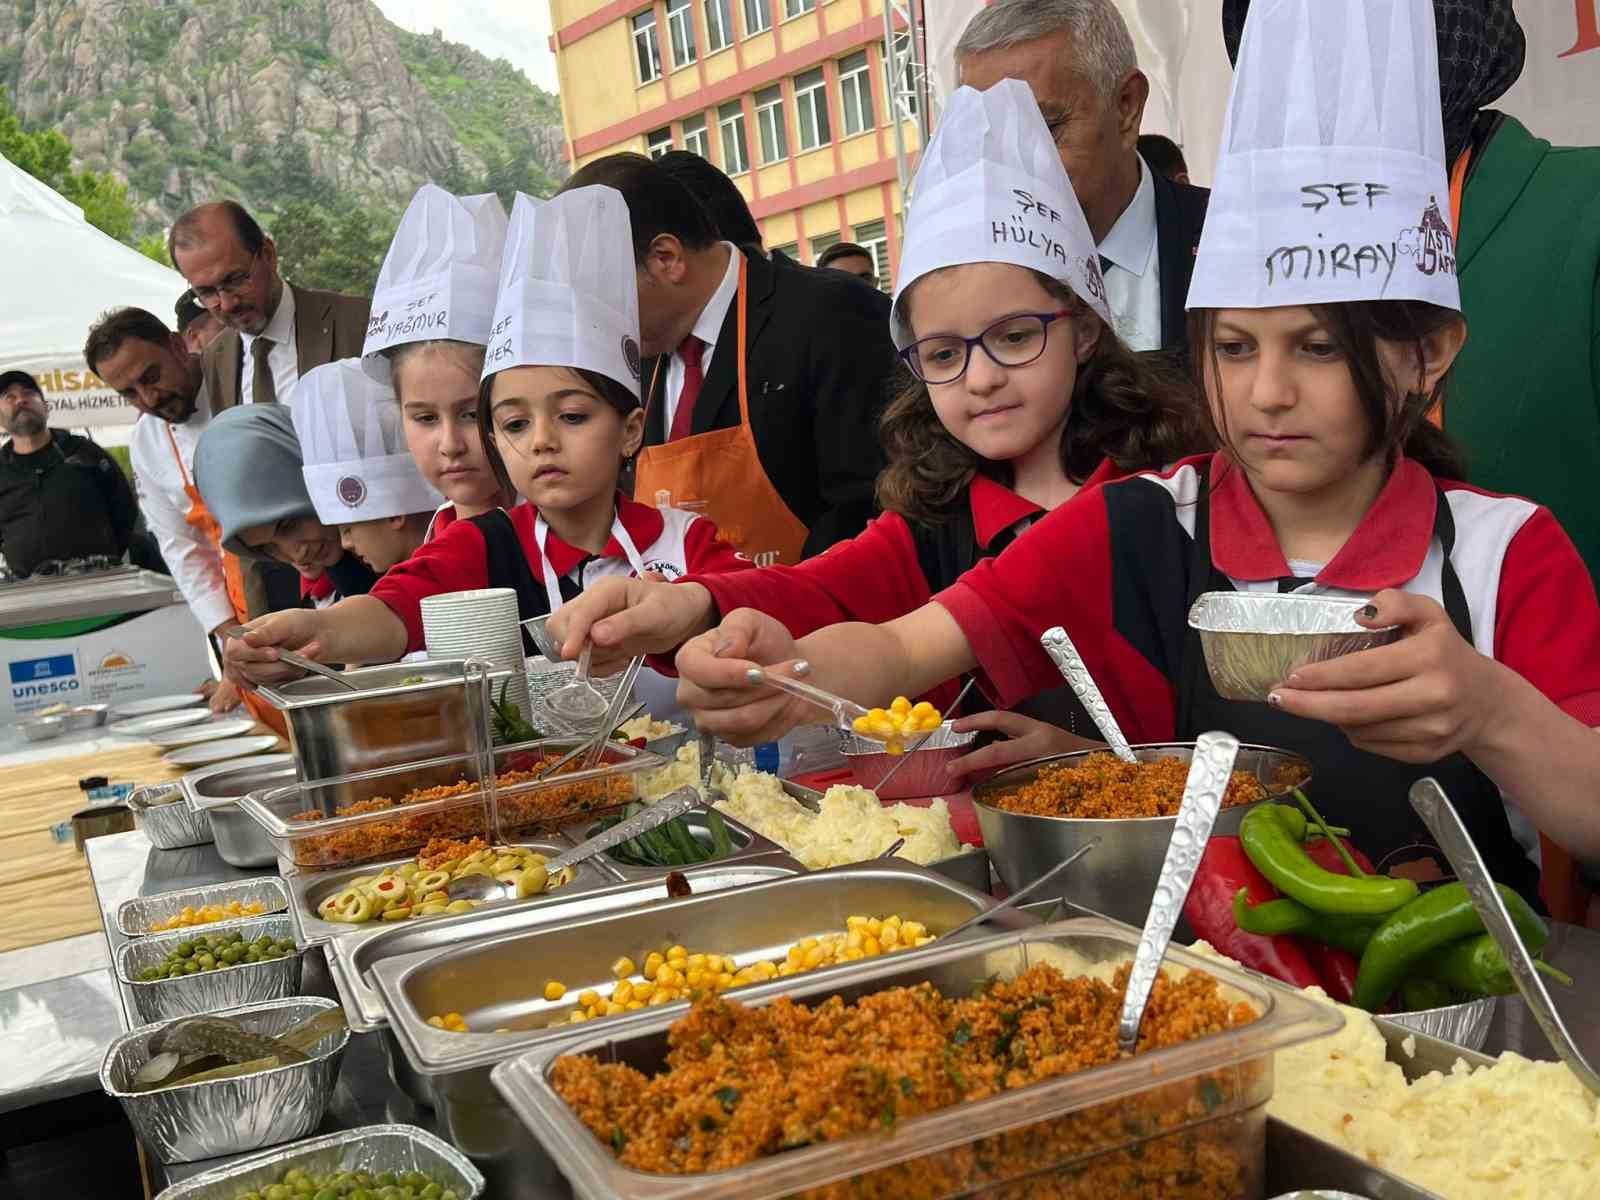 Afyonkarahisar’da Türk Mutfağı Haftası kutlandı